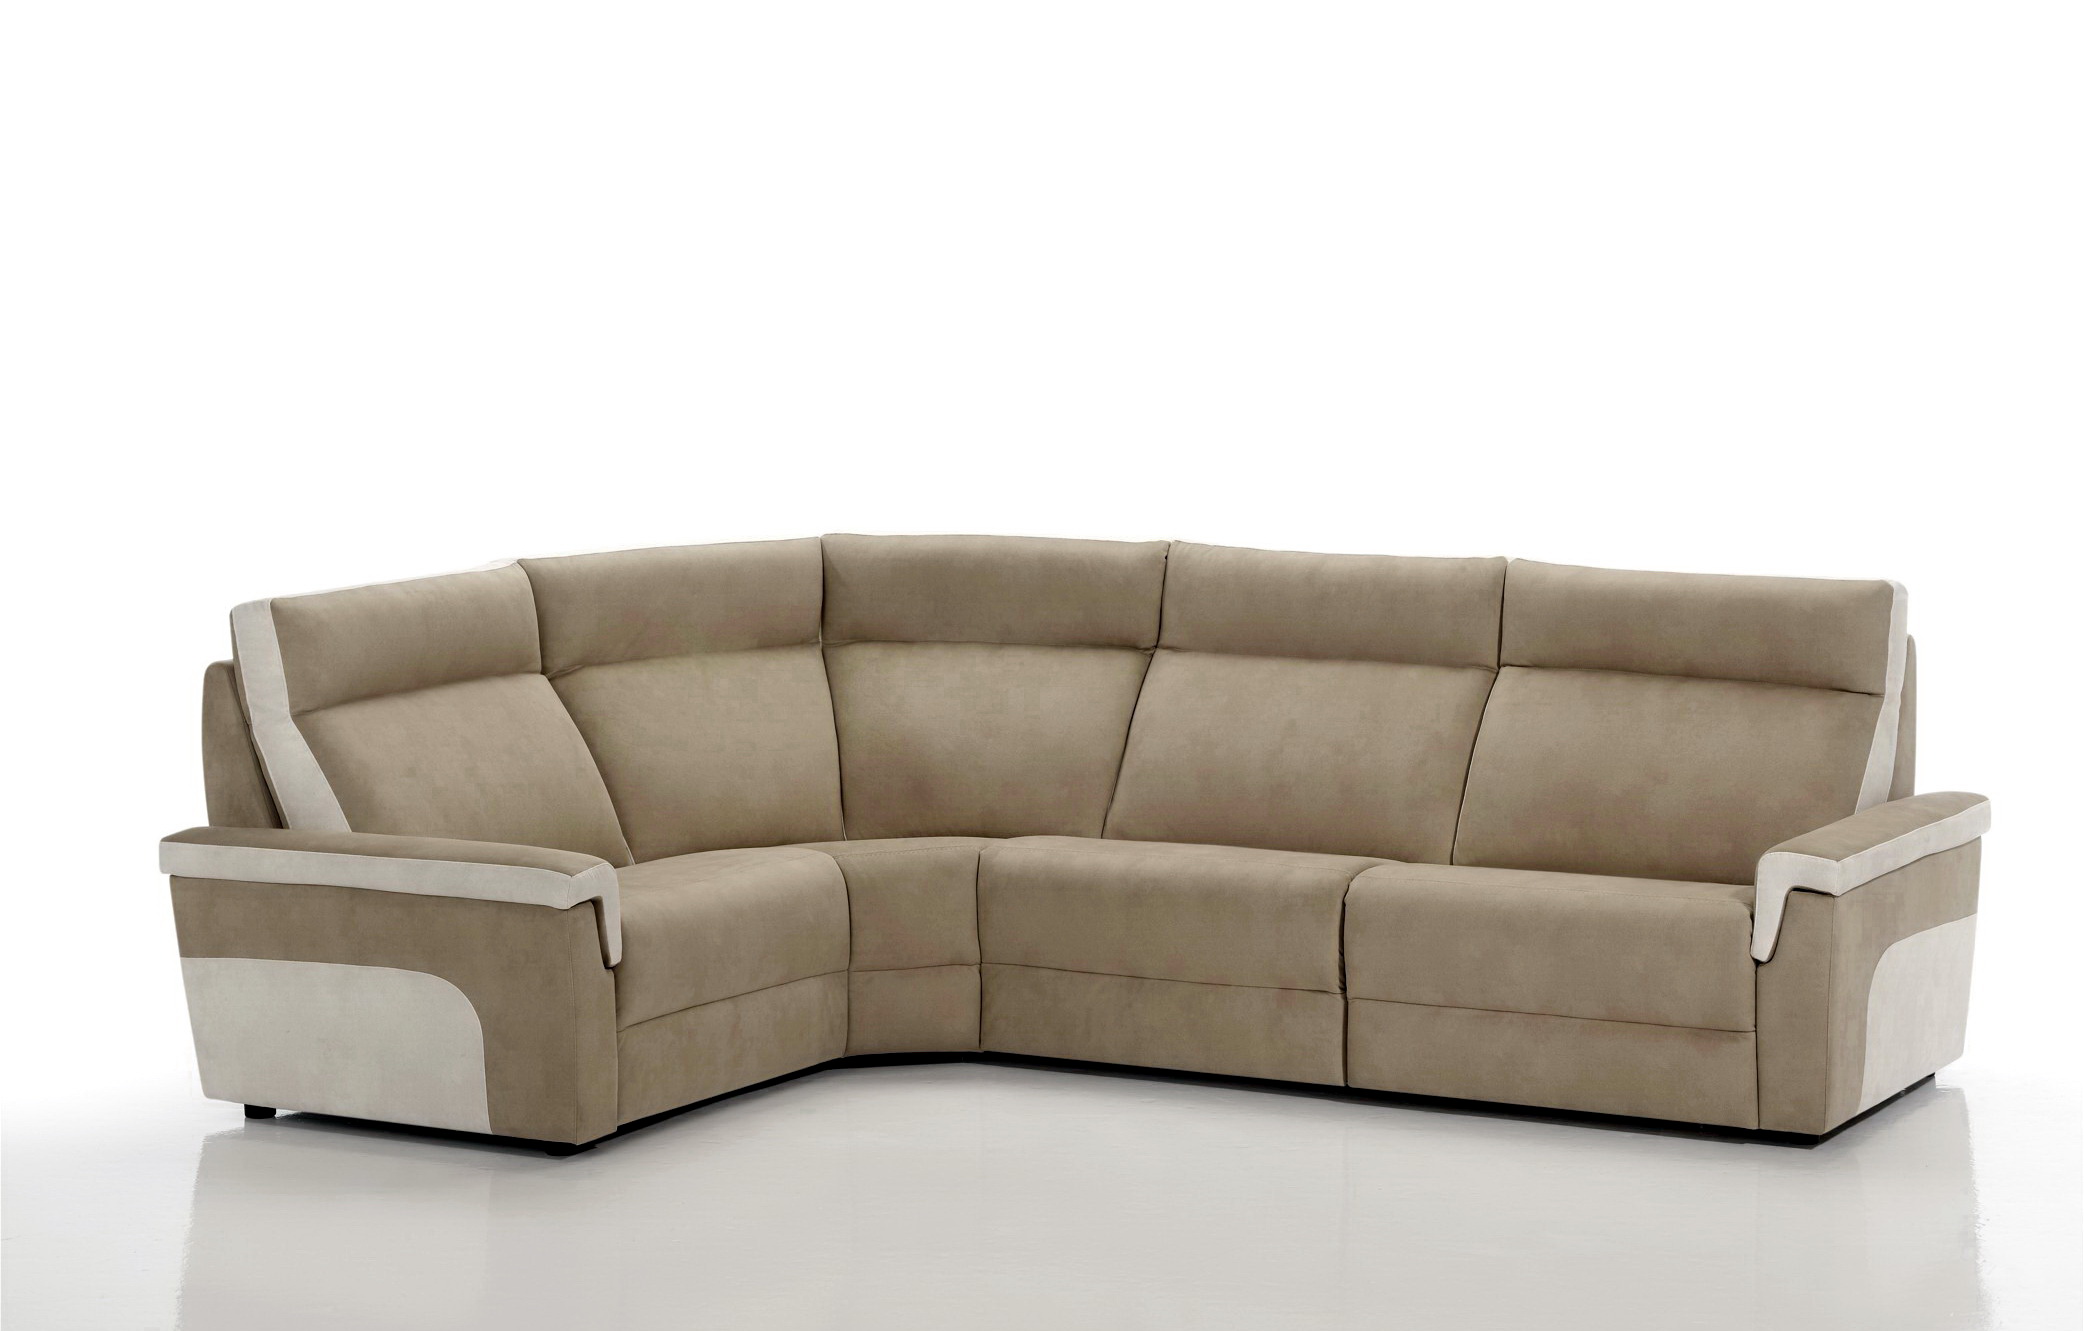 Soriano Martinez Tapizados modelo Lyon confort 0041.1 chaise-longue en muebles antoñán® León